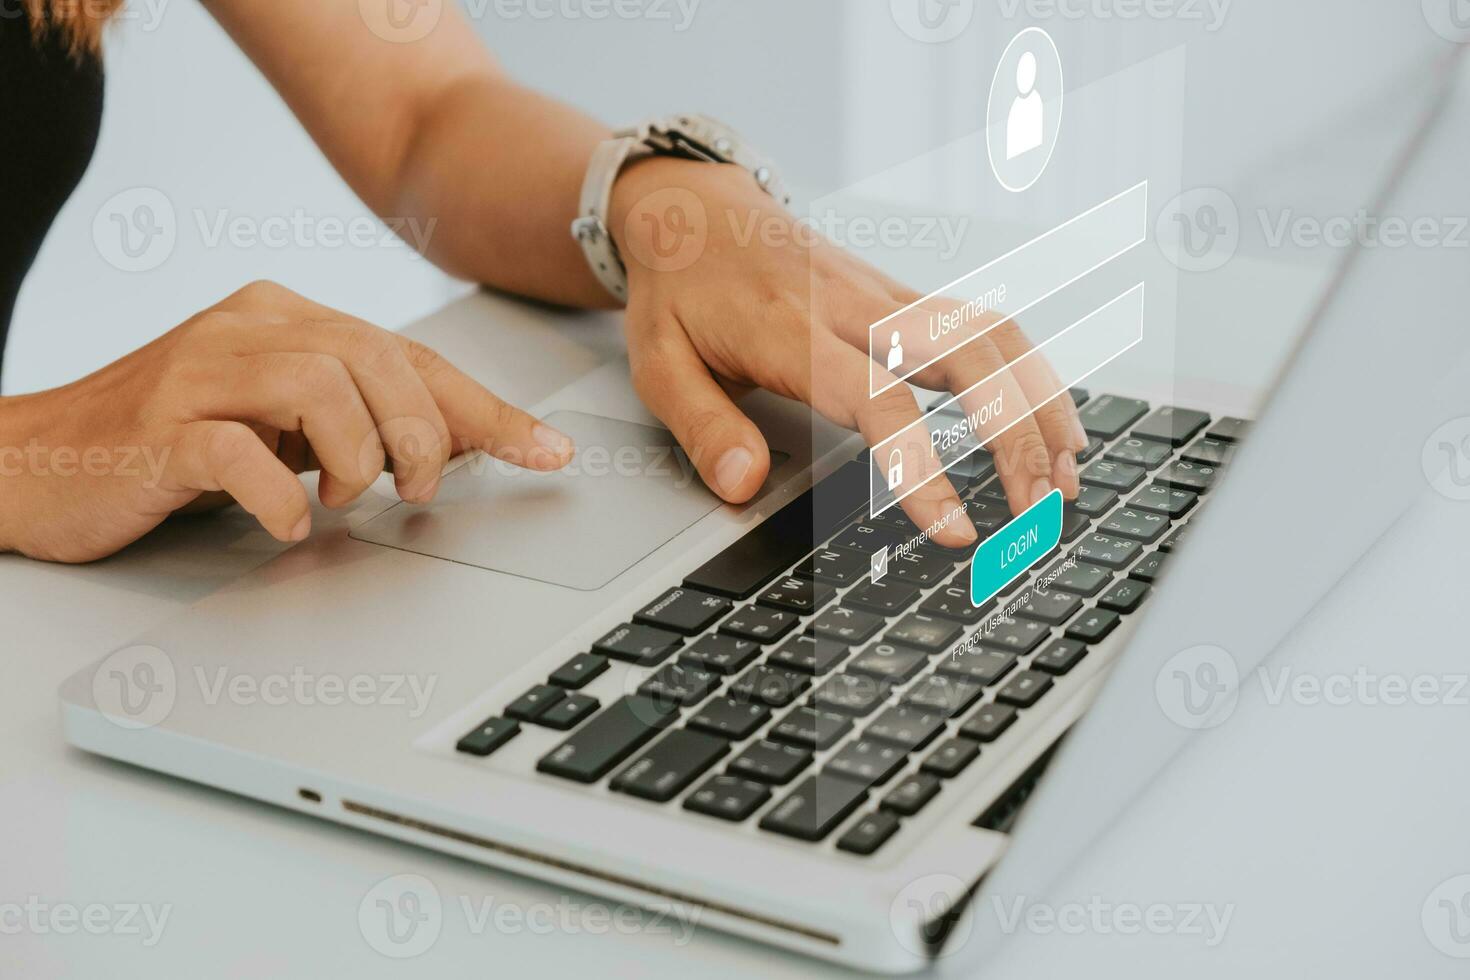 main de femme tapant sur le clavier avec identifiant et mot de passe sur l'écran, concept de cybersécurité, protection des données et accès Internet sécurisé. photo